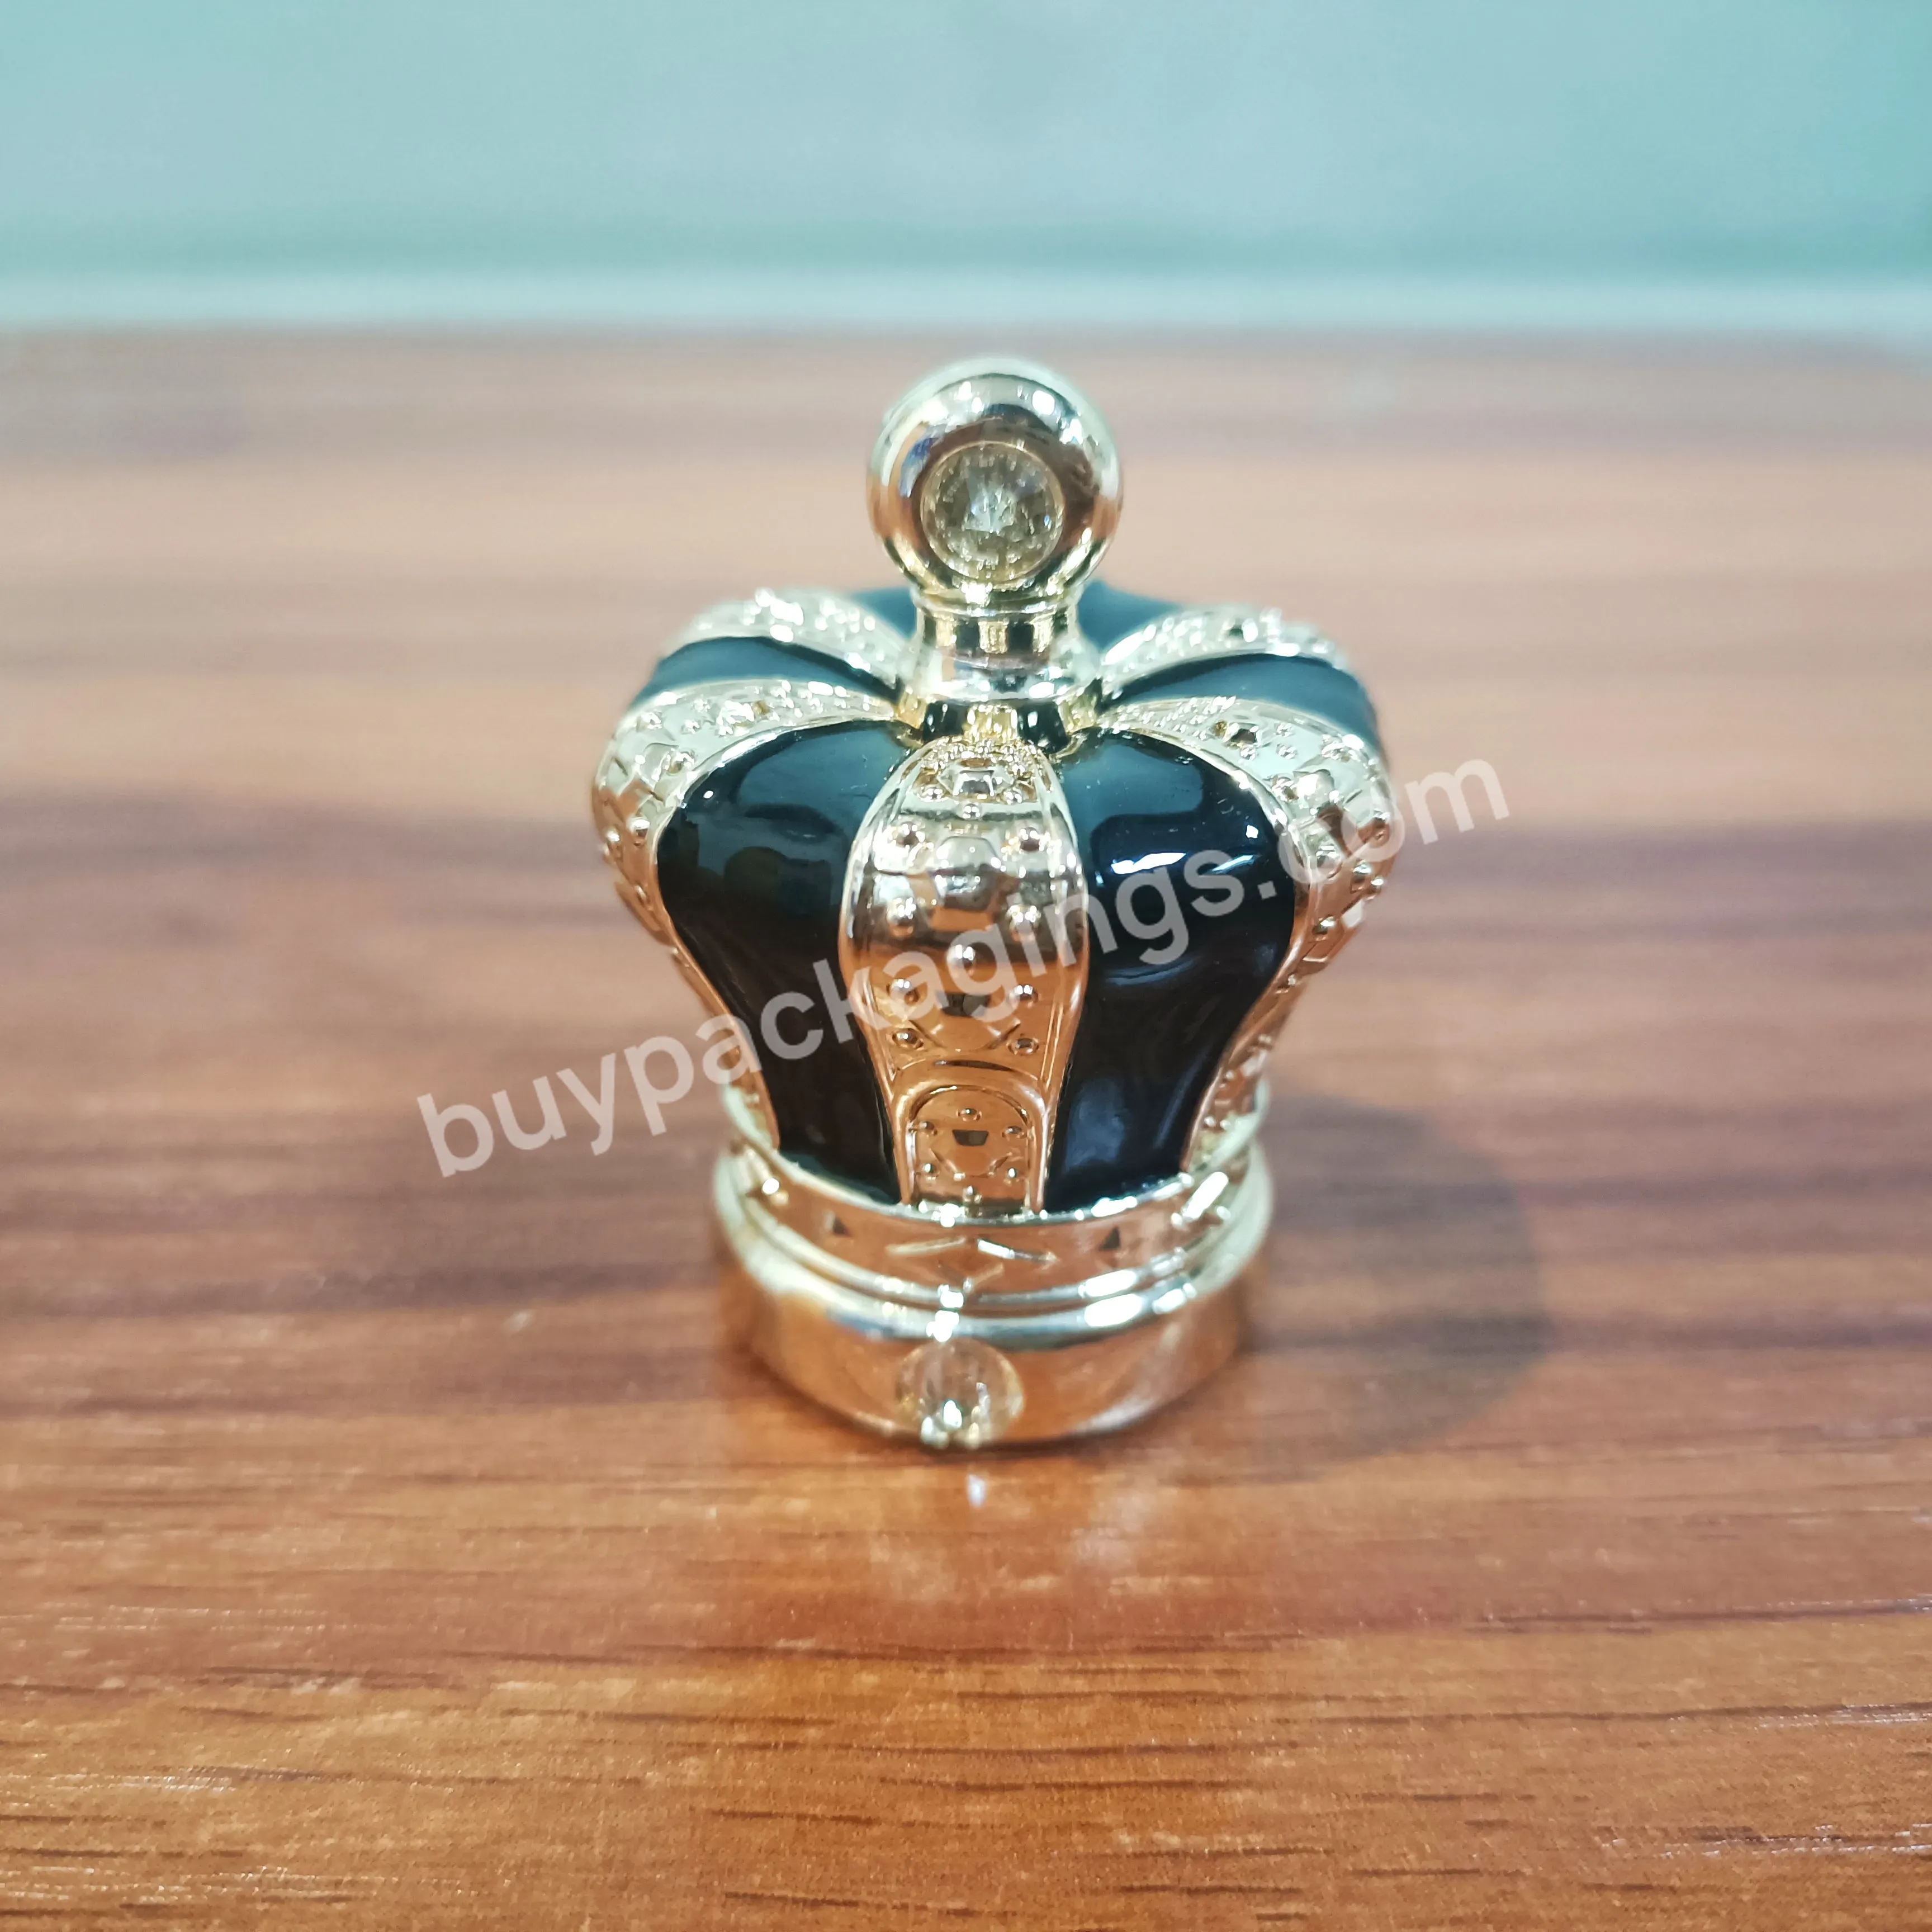 Luxury Gold Zamac Crown Shape Perfume Bottle Cap - Buy Zamac Cap For Perfume Bottle,Electroplated Gold Silver Perfume Zamac Cap,Perfume Lid Design.